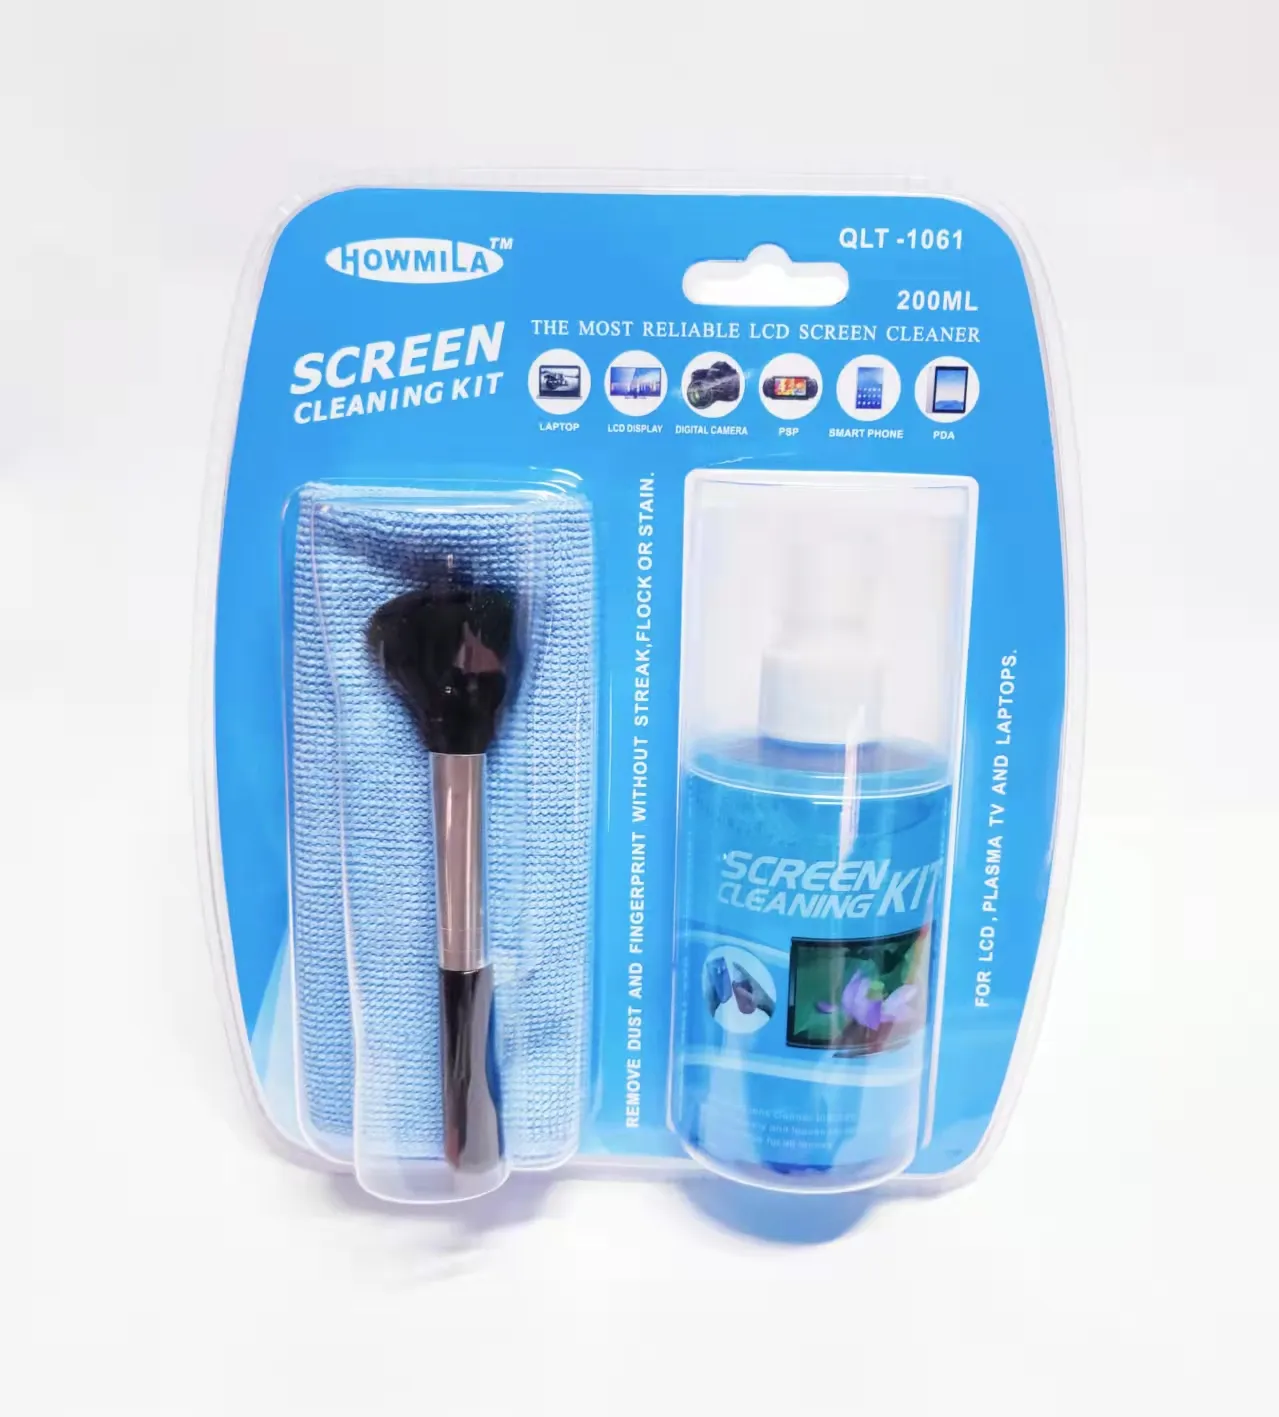 Screen Cleaner Vius Premium Screen Cleaner Spray Voor Lcd Led Tv 'S, Laptops,Tablets, Monitoren, Telefoons, en Andere Elektronische Sc